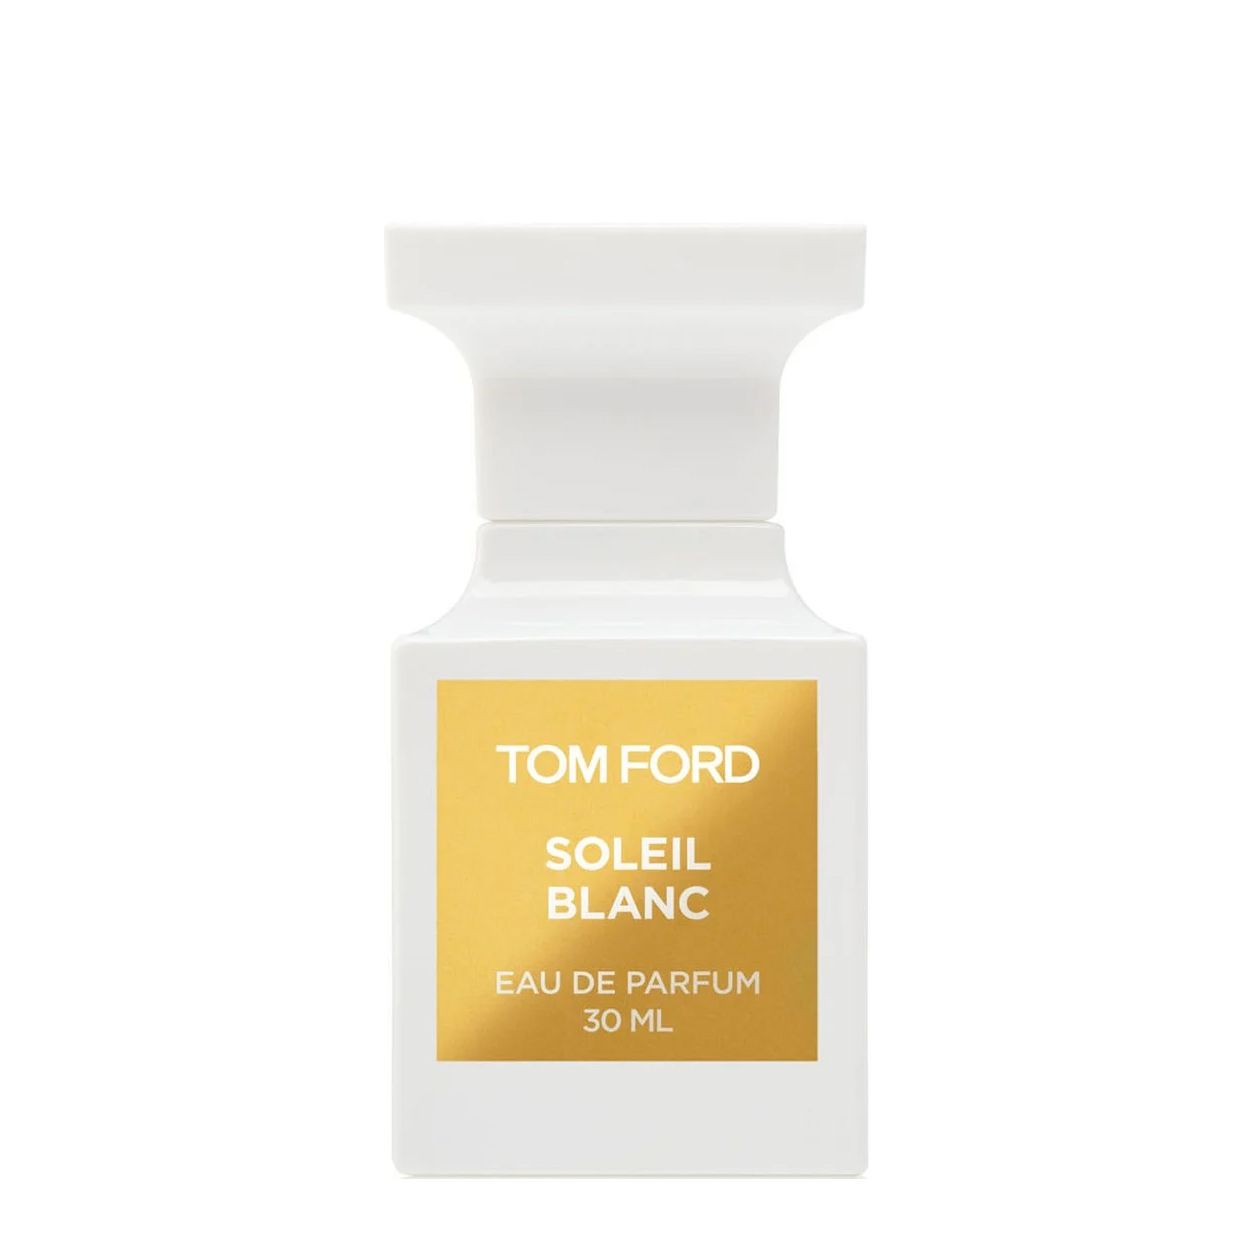 Вода парфюмерная Tom Ford Soleil Blanc, унисекс, 30 мл tom ford soleil blanс 30